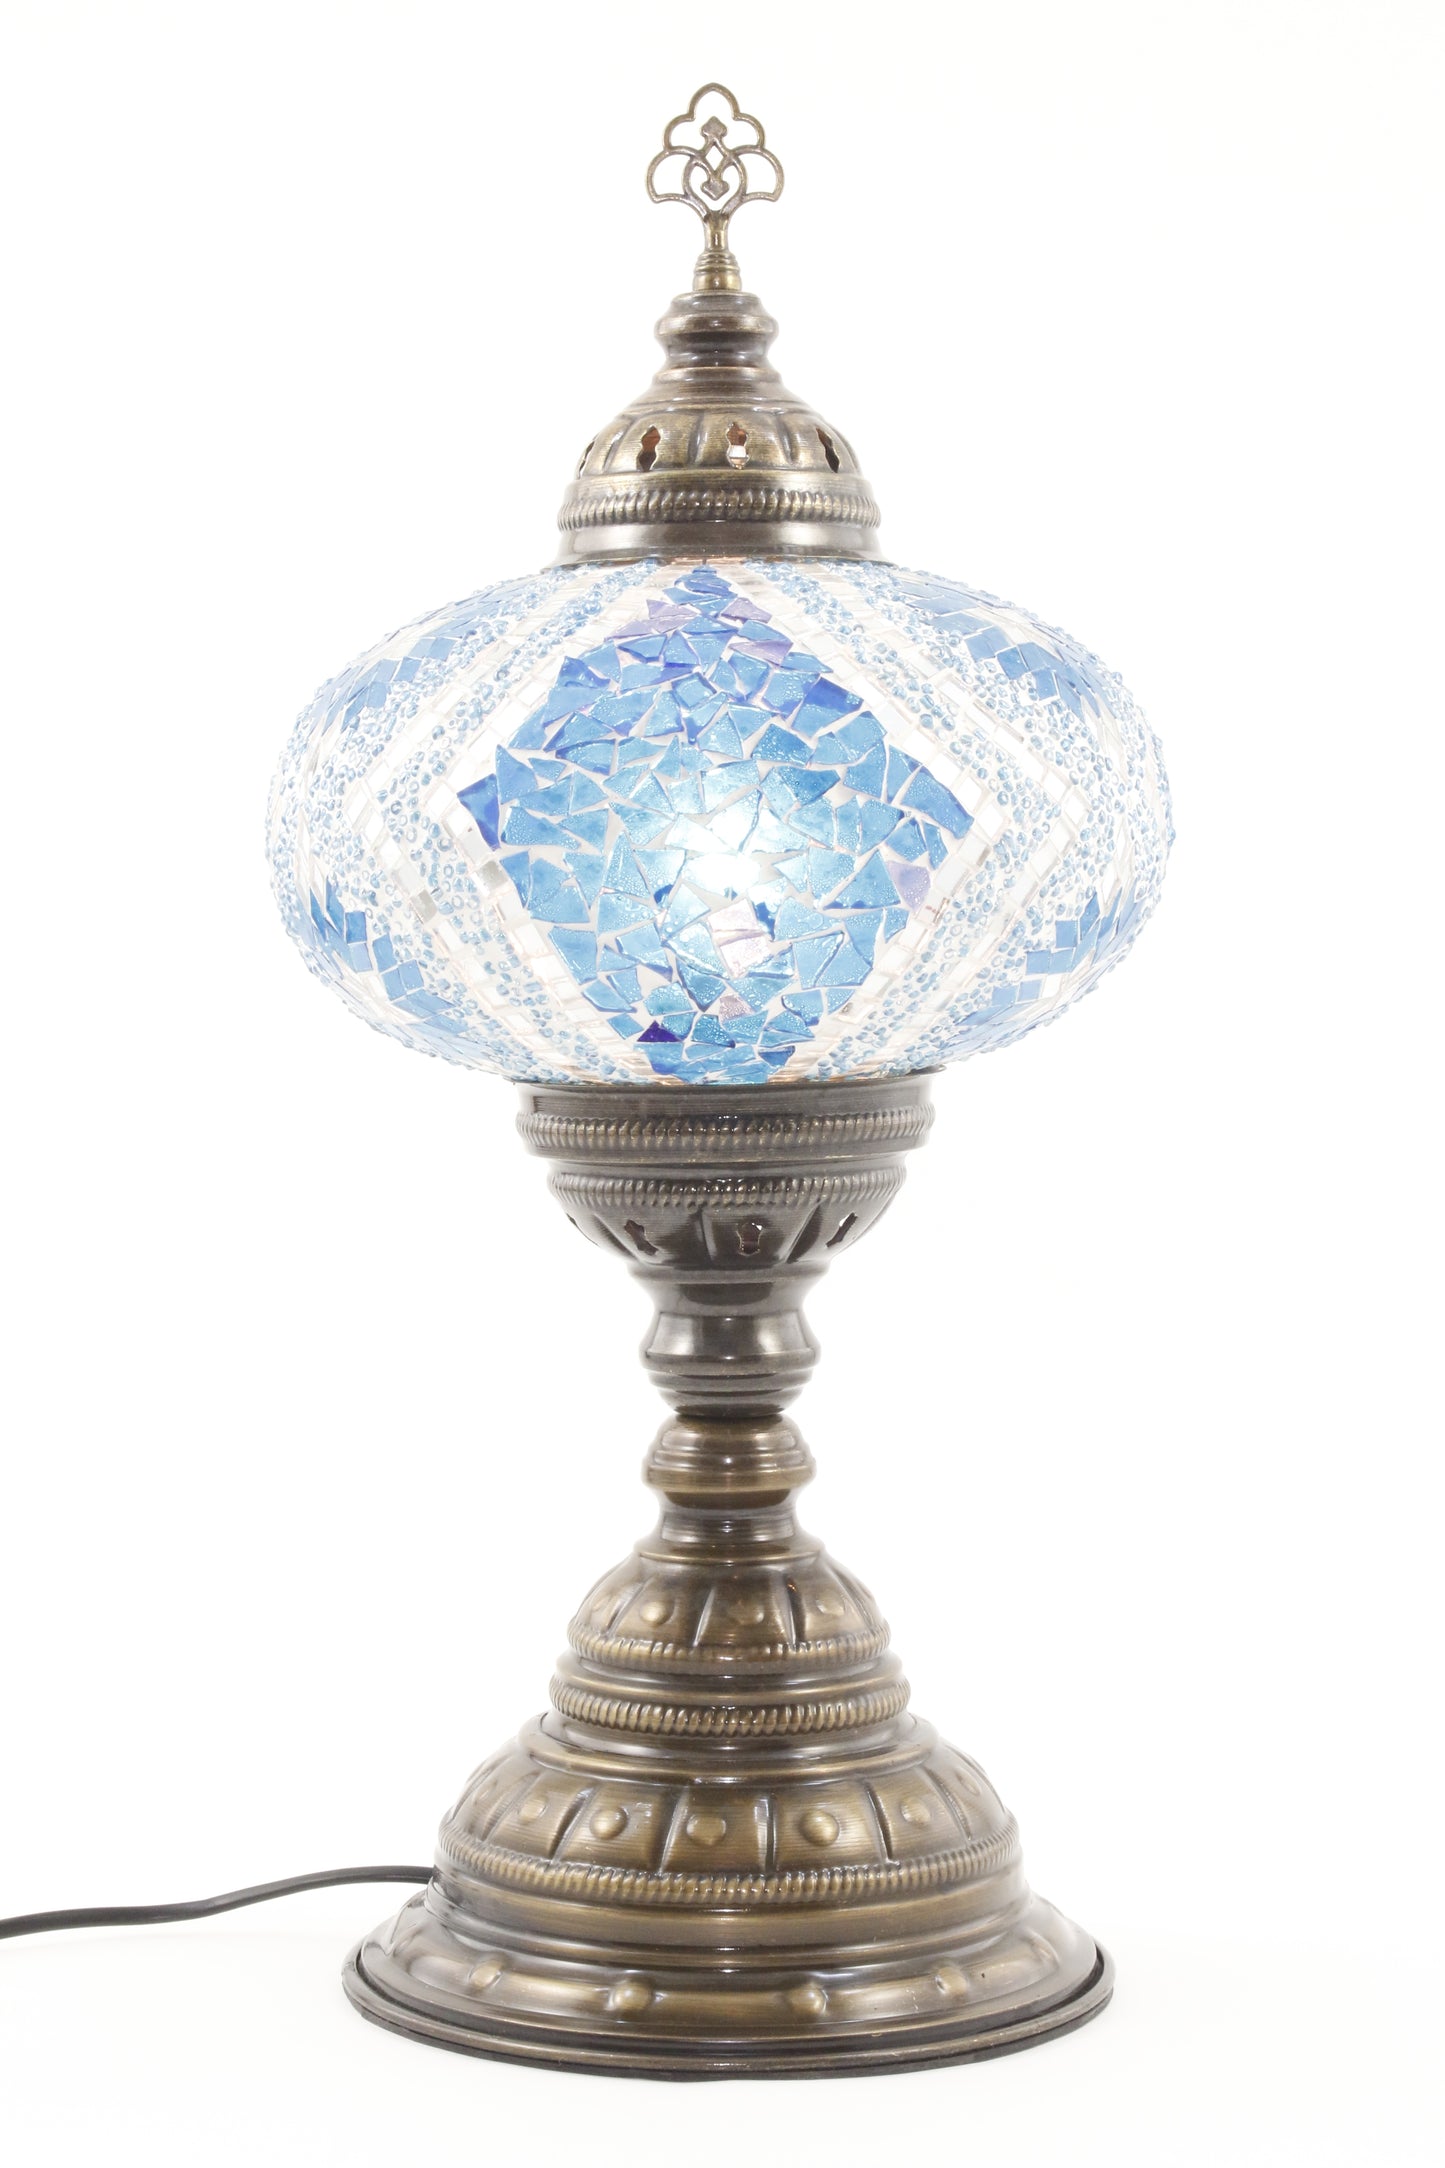 TURKISH MOSAIC TABLE LAMP MB4 BLUE-TURNED ON